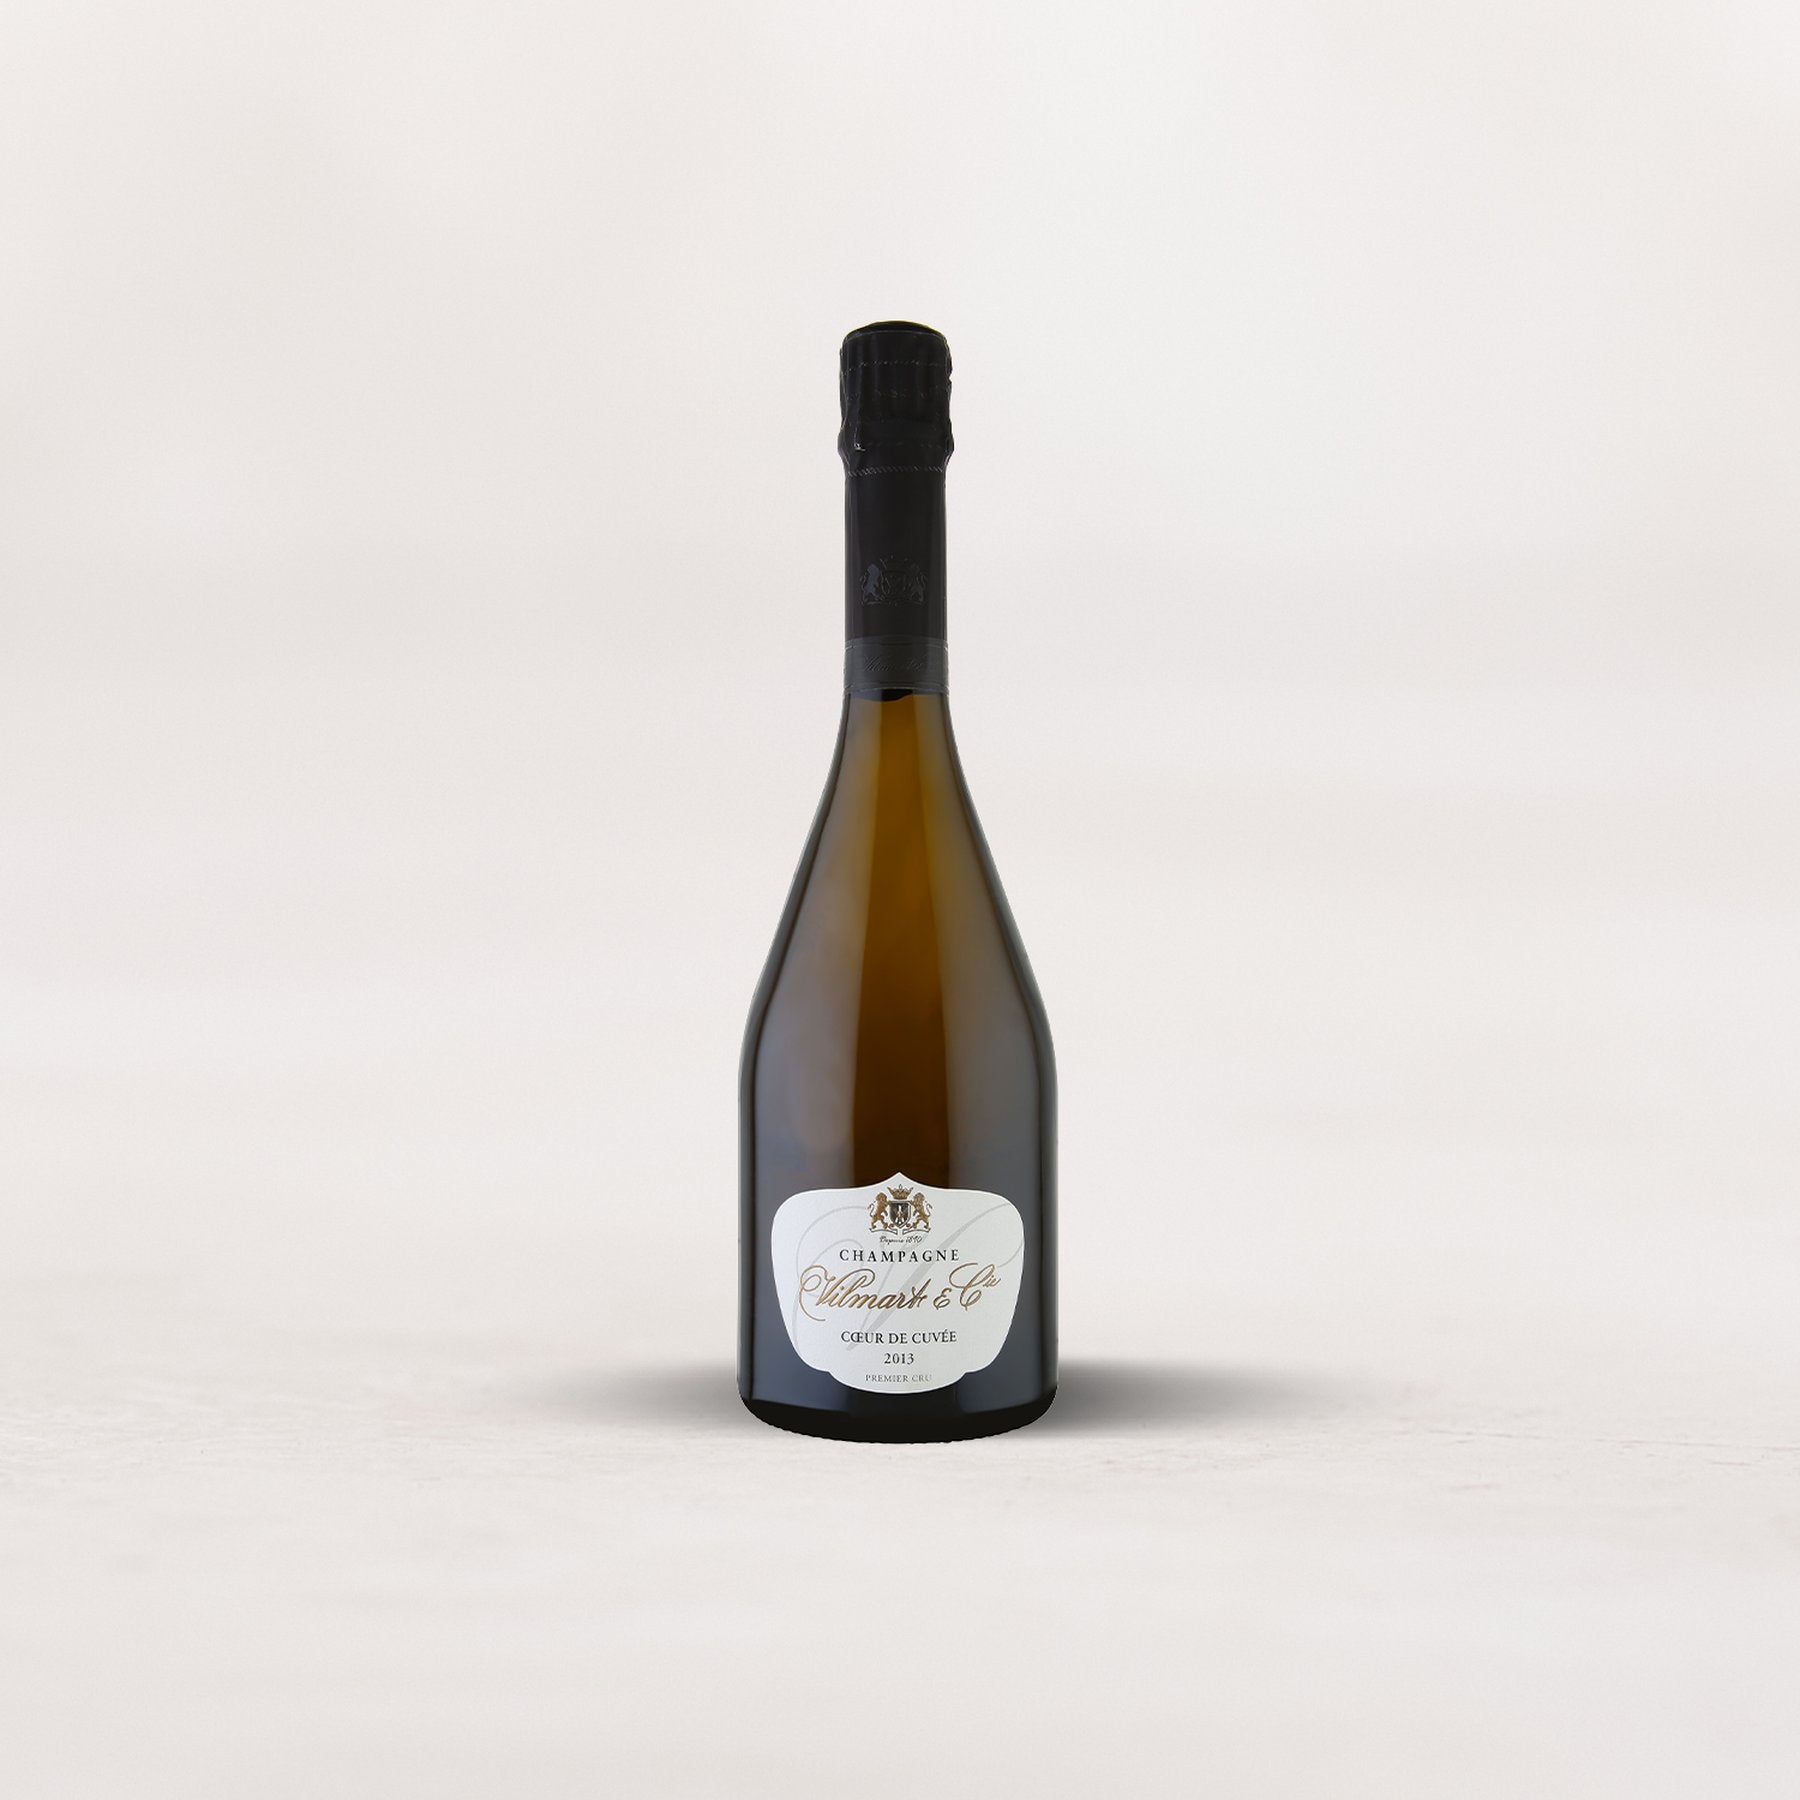 Champagne Vilmart & Cie, Premier Cru “Coeur De Cuvée”